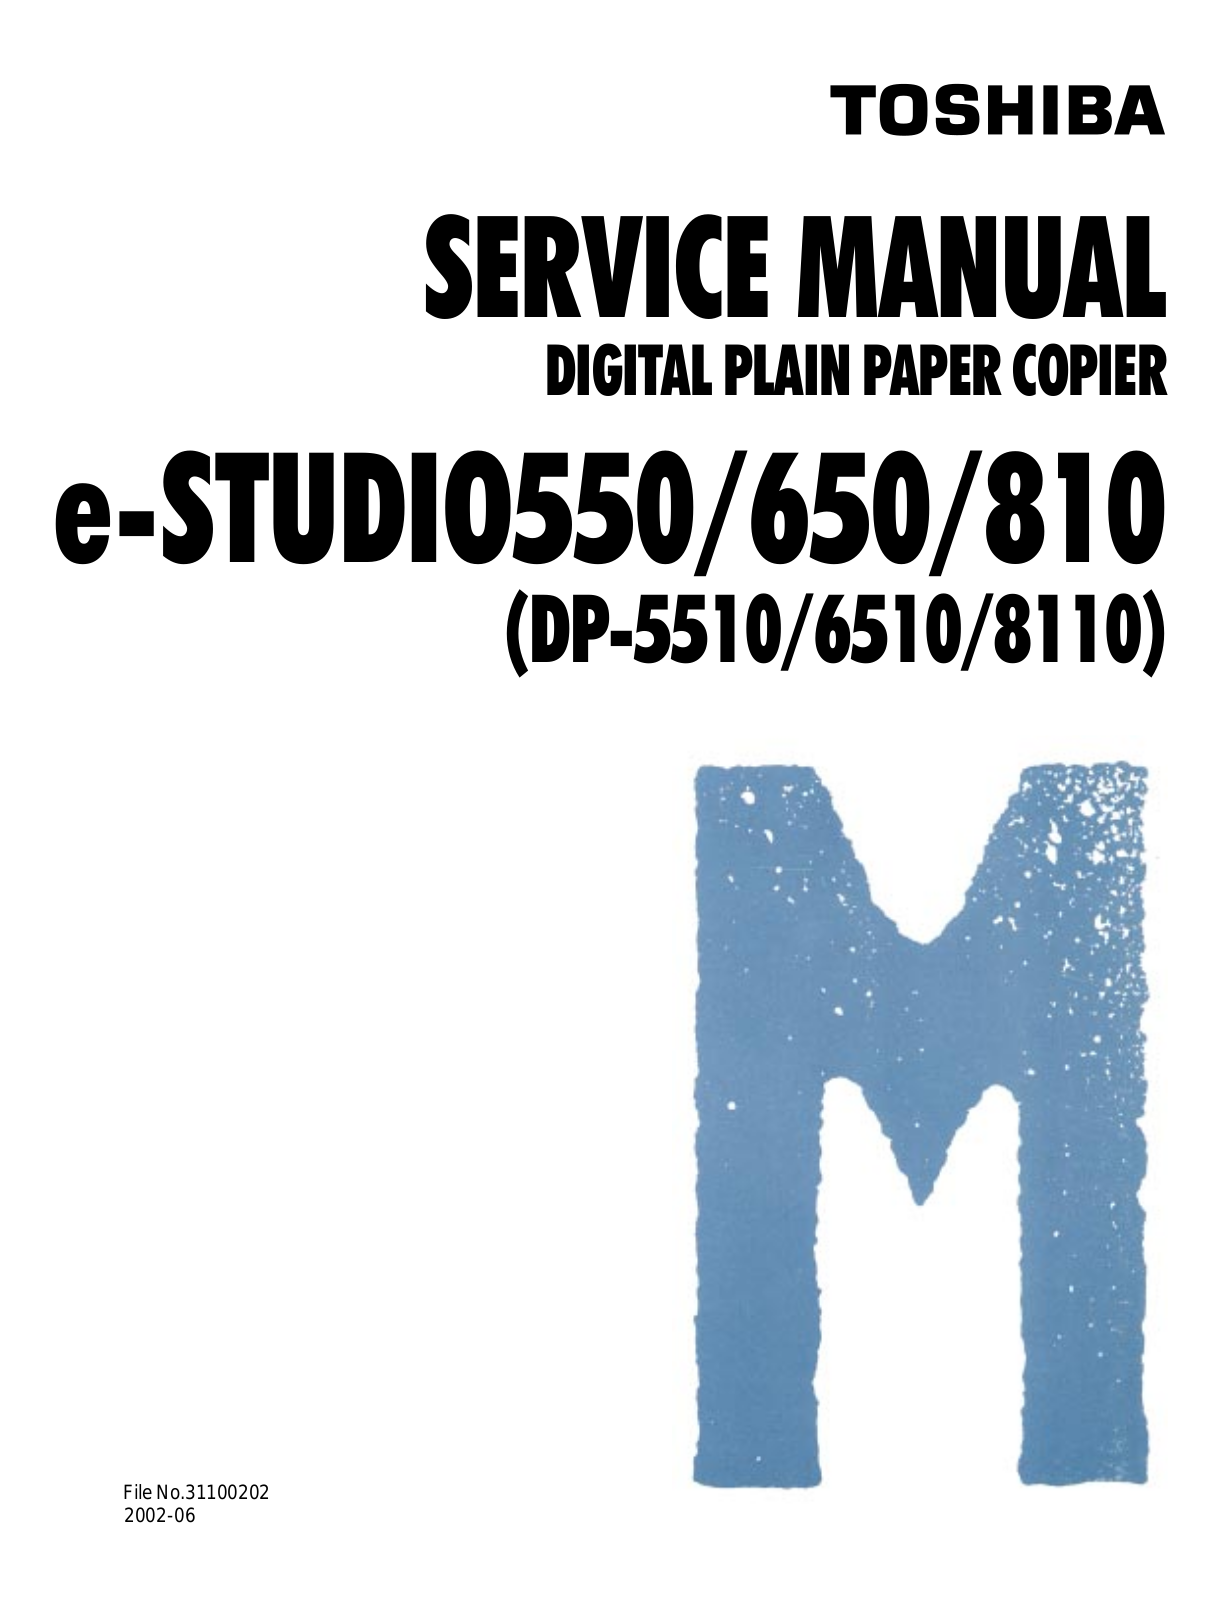 Toshiba DP8110, DP-5510, DP6510, 810, 550 Service Manual